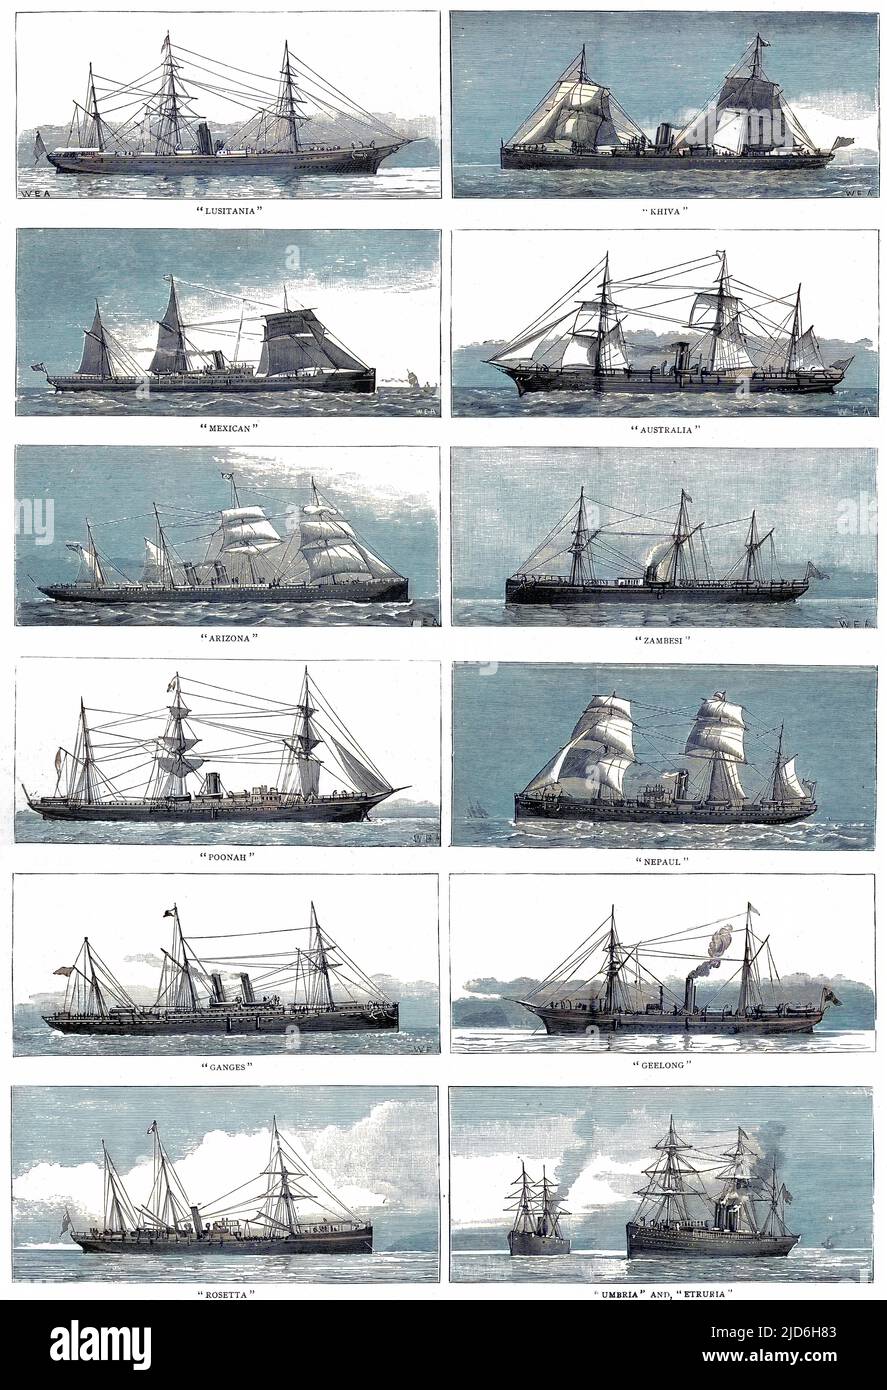 Dampfschiffe „Lusitania“, „Khiva“, „Mexican“, „Australia“, „Arizona“, „Zambesi“, „Poonah“, „Nepaul“, „Ganges“, „Geelong“, „Rosetta“, „Umbria“ und „Etruria“ (von links nach rechts, von oben nach unten). Diese Schiffe der Linien P&O, Cunard, Orient, Union und Guion gehörten zu den 150 Handelsschiffen, die die britische Regierung hätte im Falle eines Krieges mit Russland als bewaffnete Kreuzfahrer hätte überführen können. Kolorierte Version von: 10216372 Datum: 1885 Stockfoto